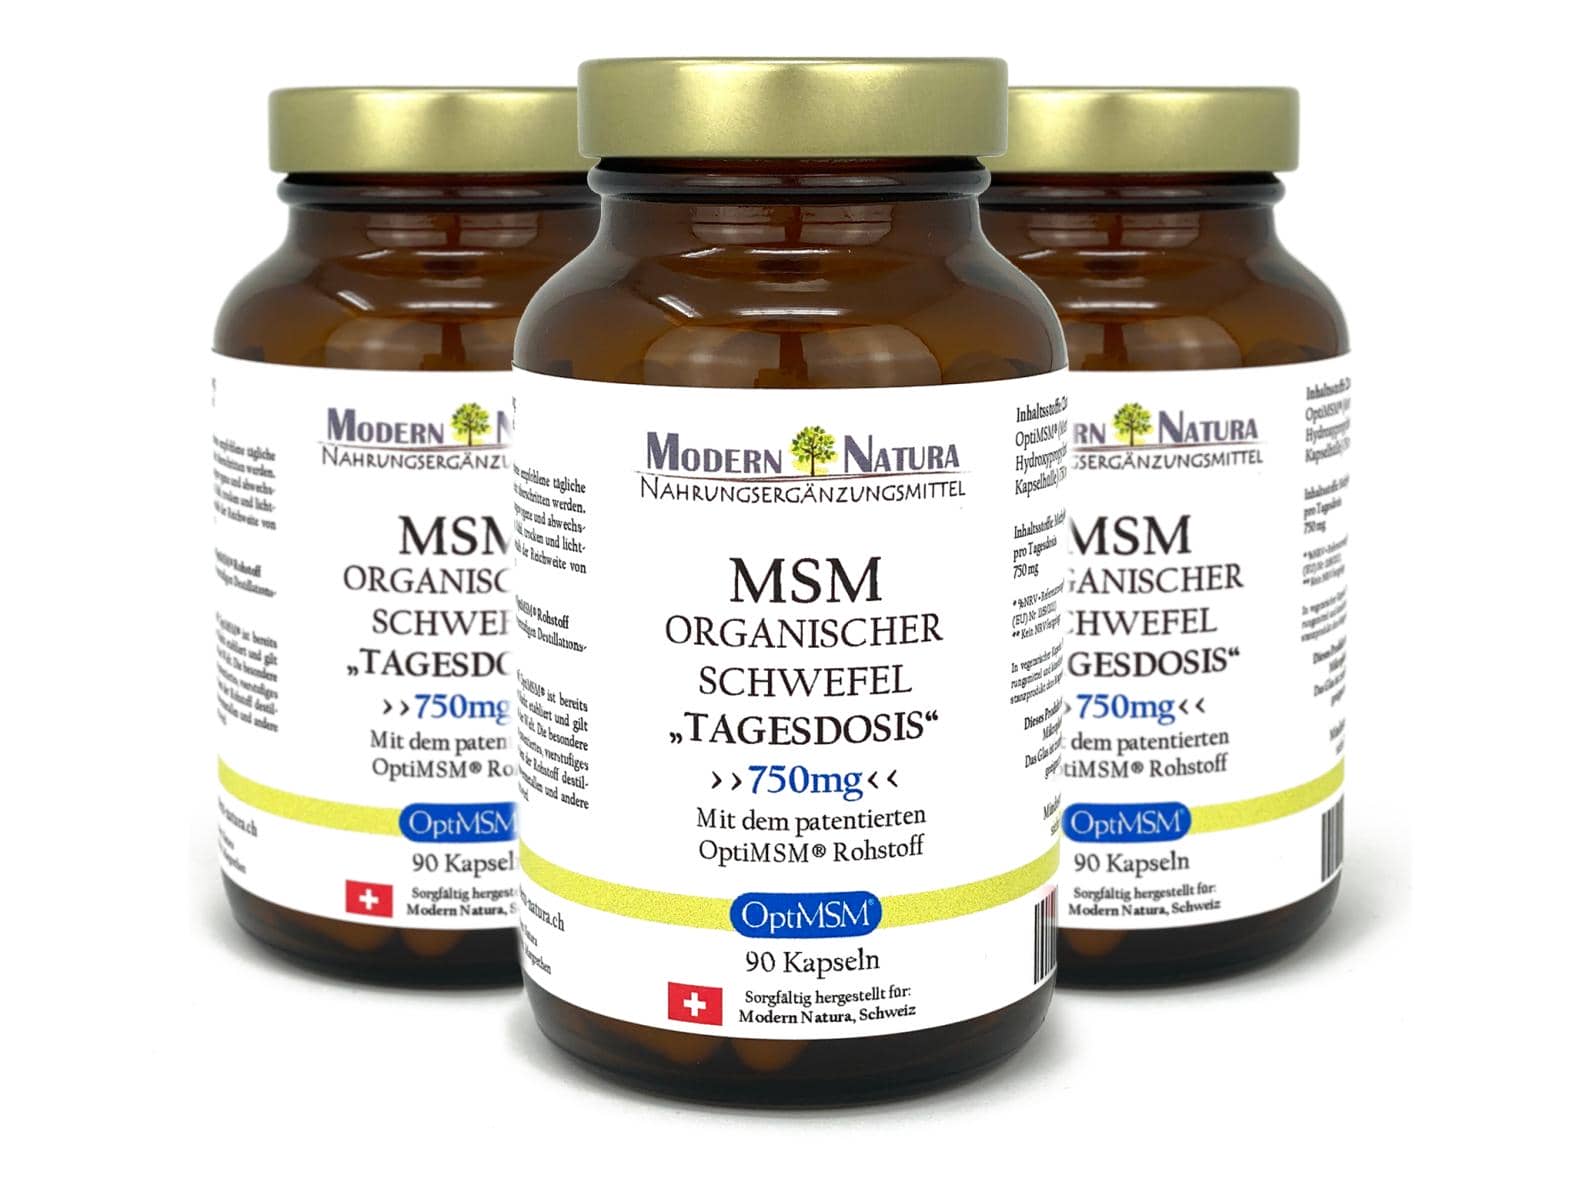 OptiMSM® - Organischer Schwefel Kapseln "Tagesdosis" Dreierpack - MSM Schwefel - Vegan & Glutenfrei (3x 90 Kapseln) Methylsulfonylmethan